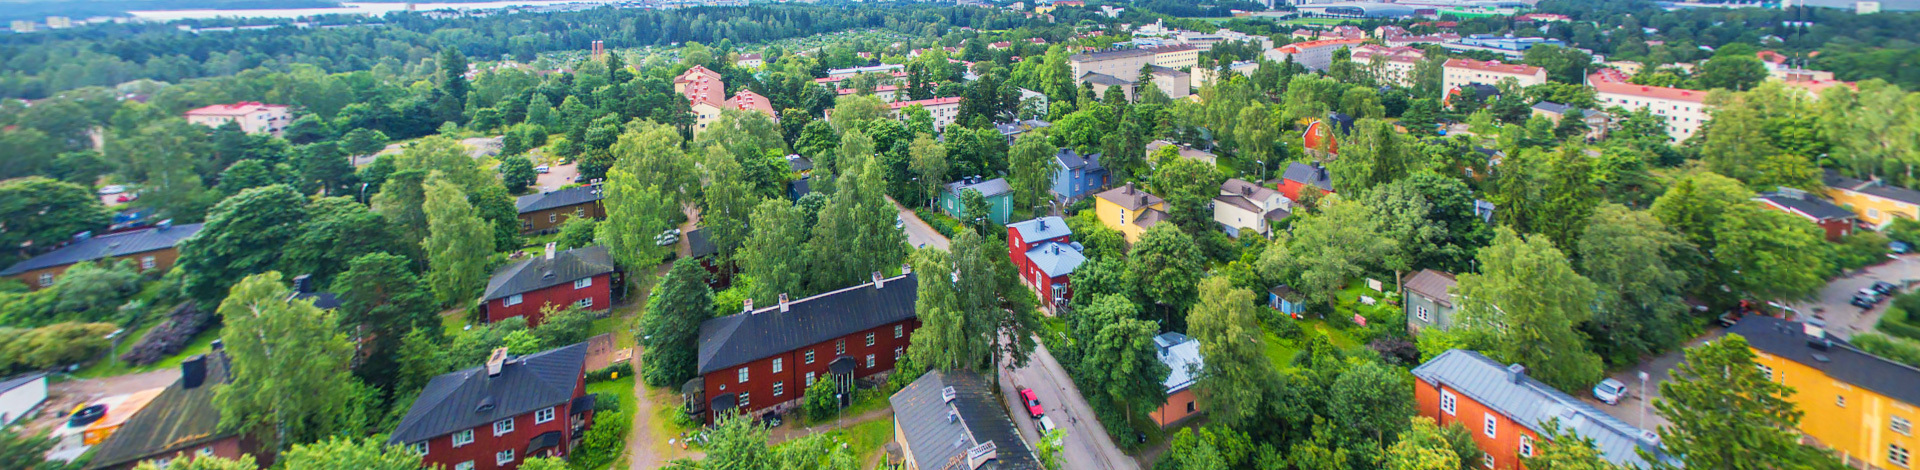 View of Käpylä, Helsinki